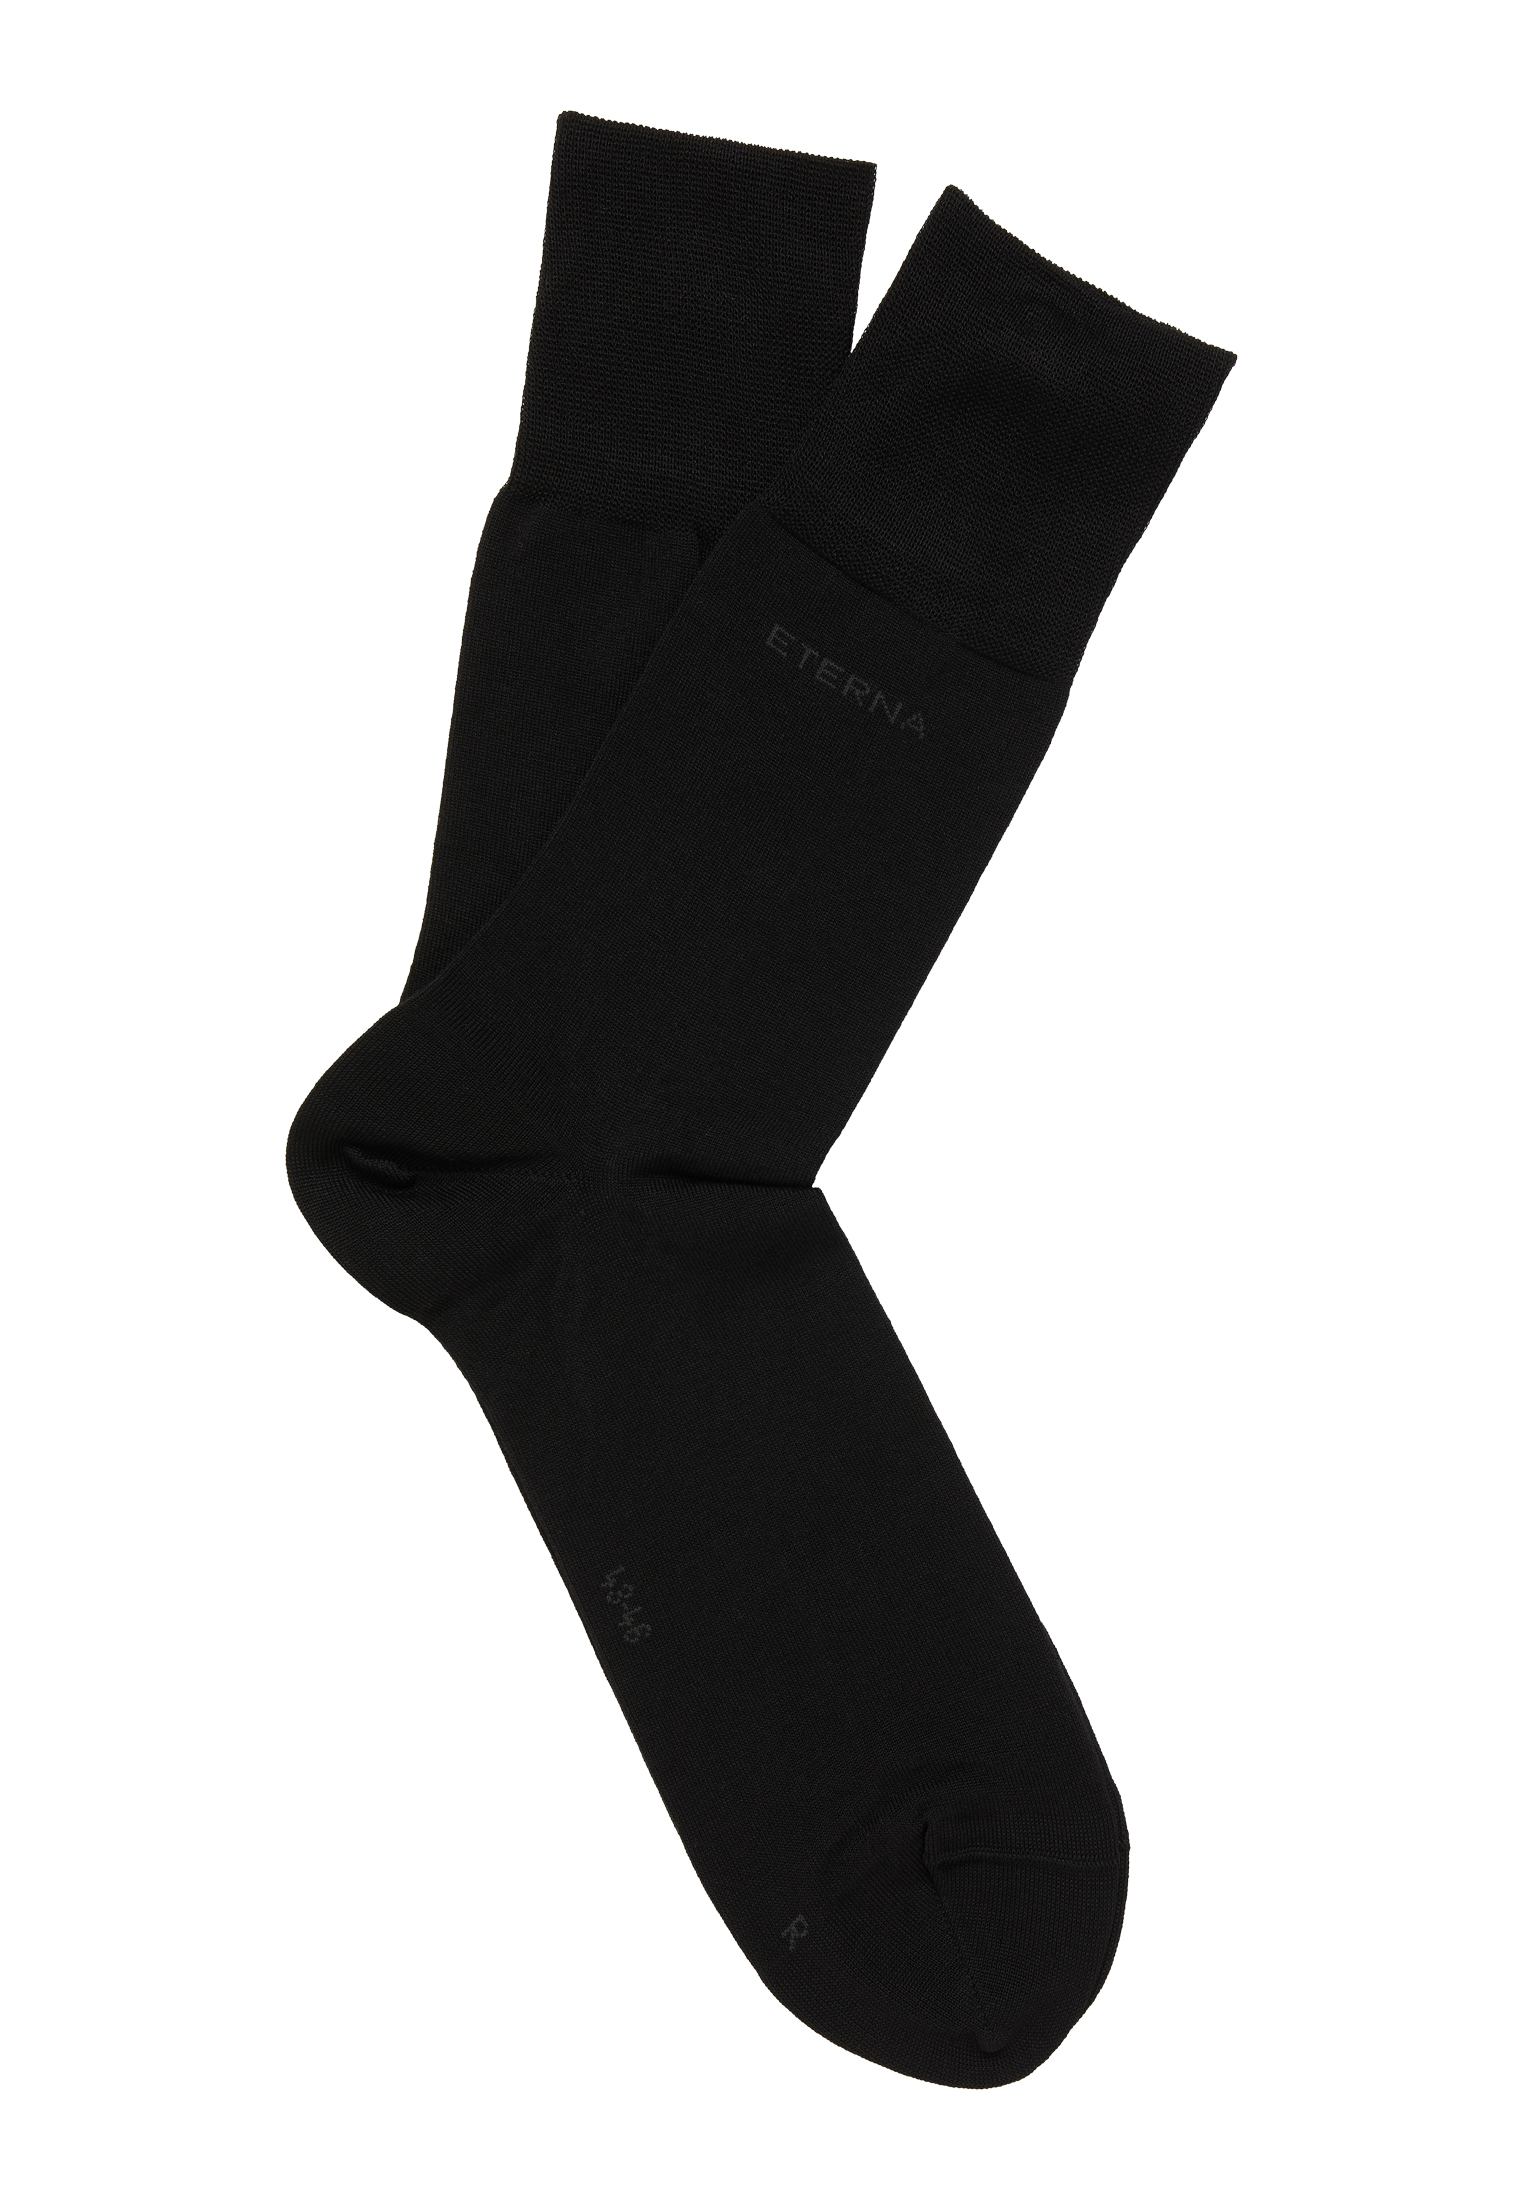 Socken in 1AC00926-03-91-47-48 | schwarz unifarben | 47-48 schwarz 